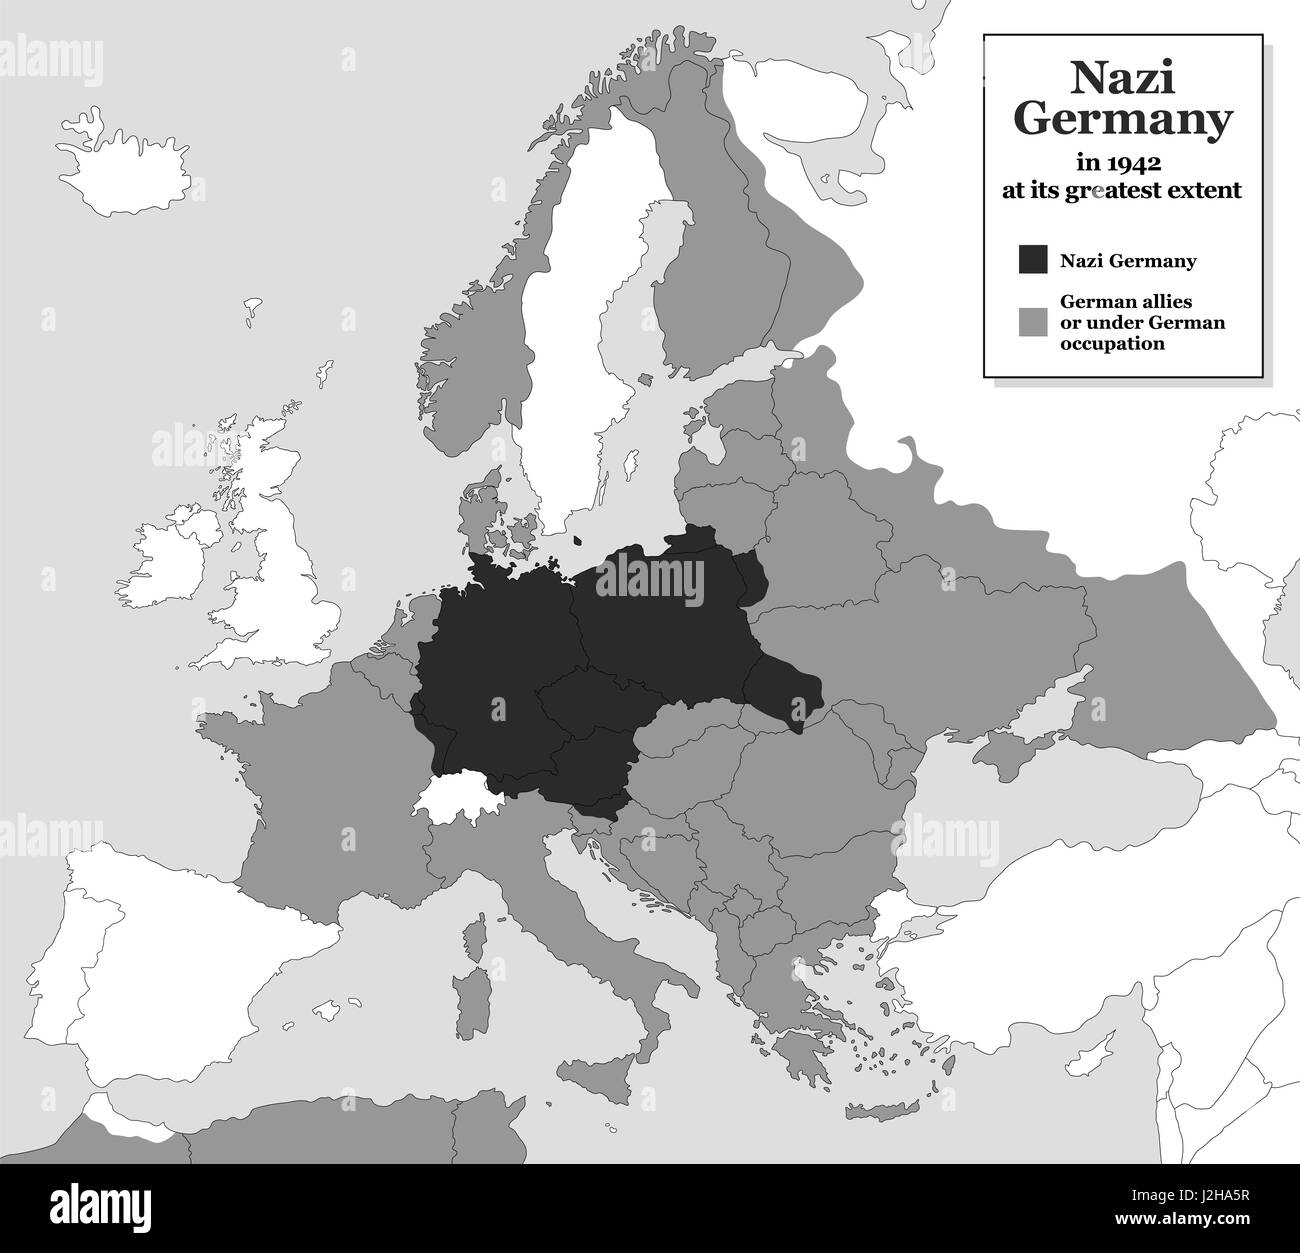 La Germania nazista nel momento della sua massima estensione durante la seconda guerra mondiale nel 1942 - con gli alleati tedeschi e membri sotto occupazione tedesca. Storico in bianco e nero mappa. Foto Stock